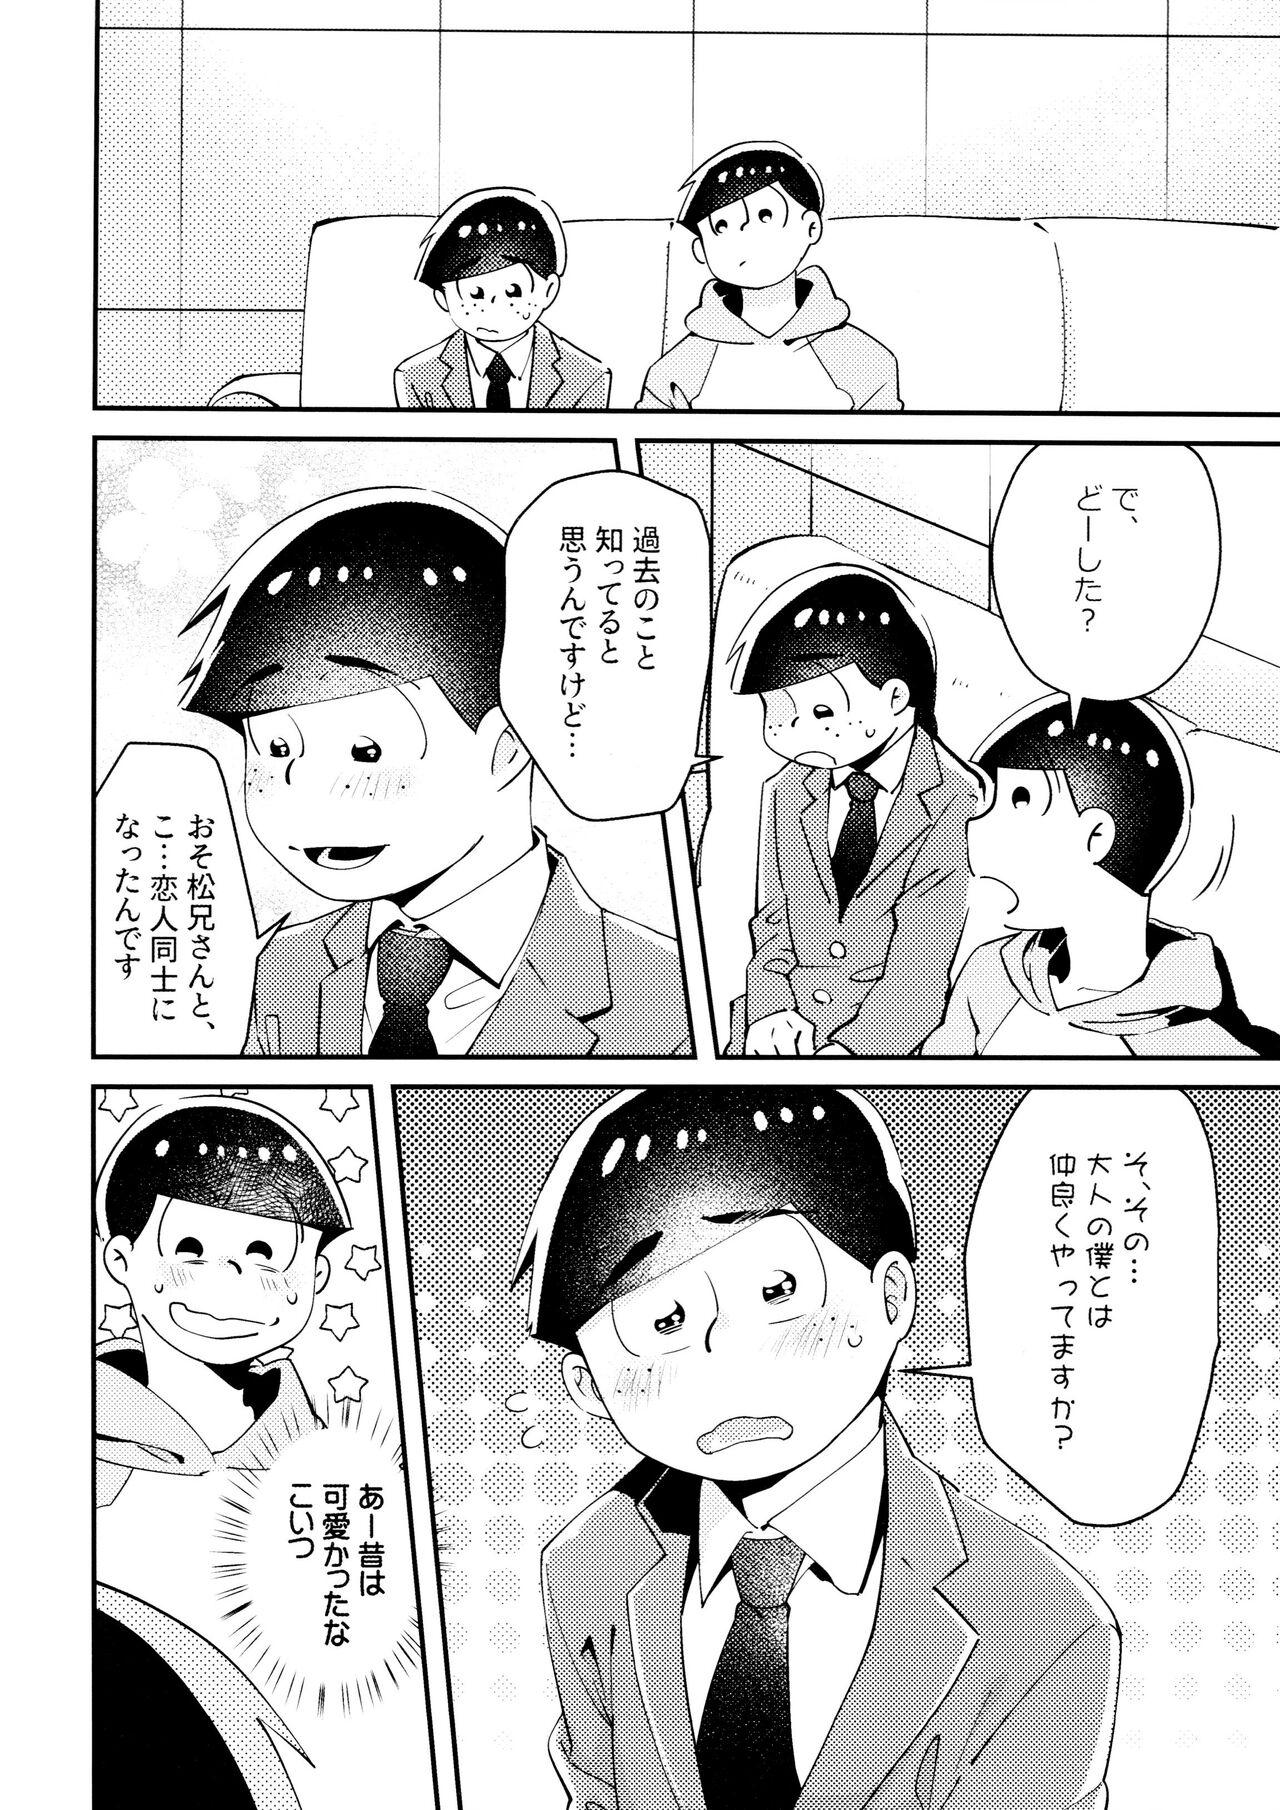 Mallu Cherry boy END - Osomatsu-san Cdmx - Page 5